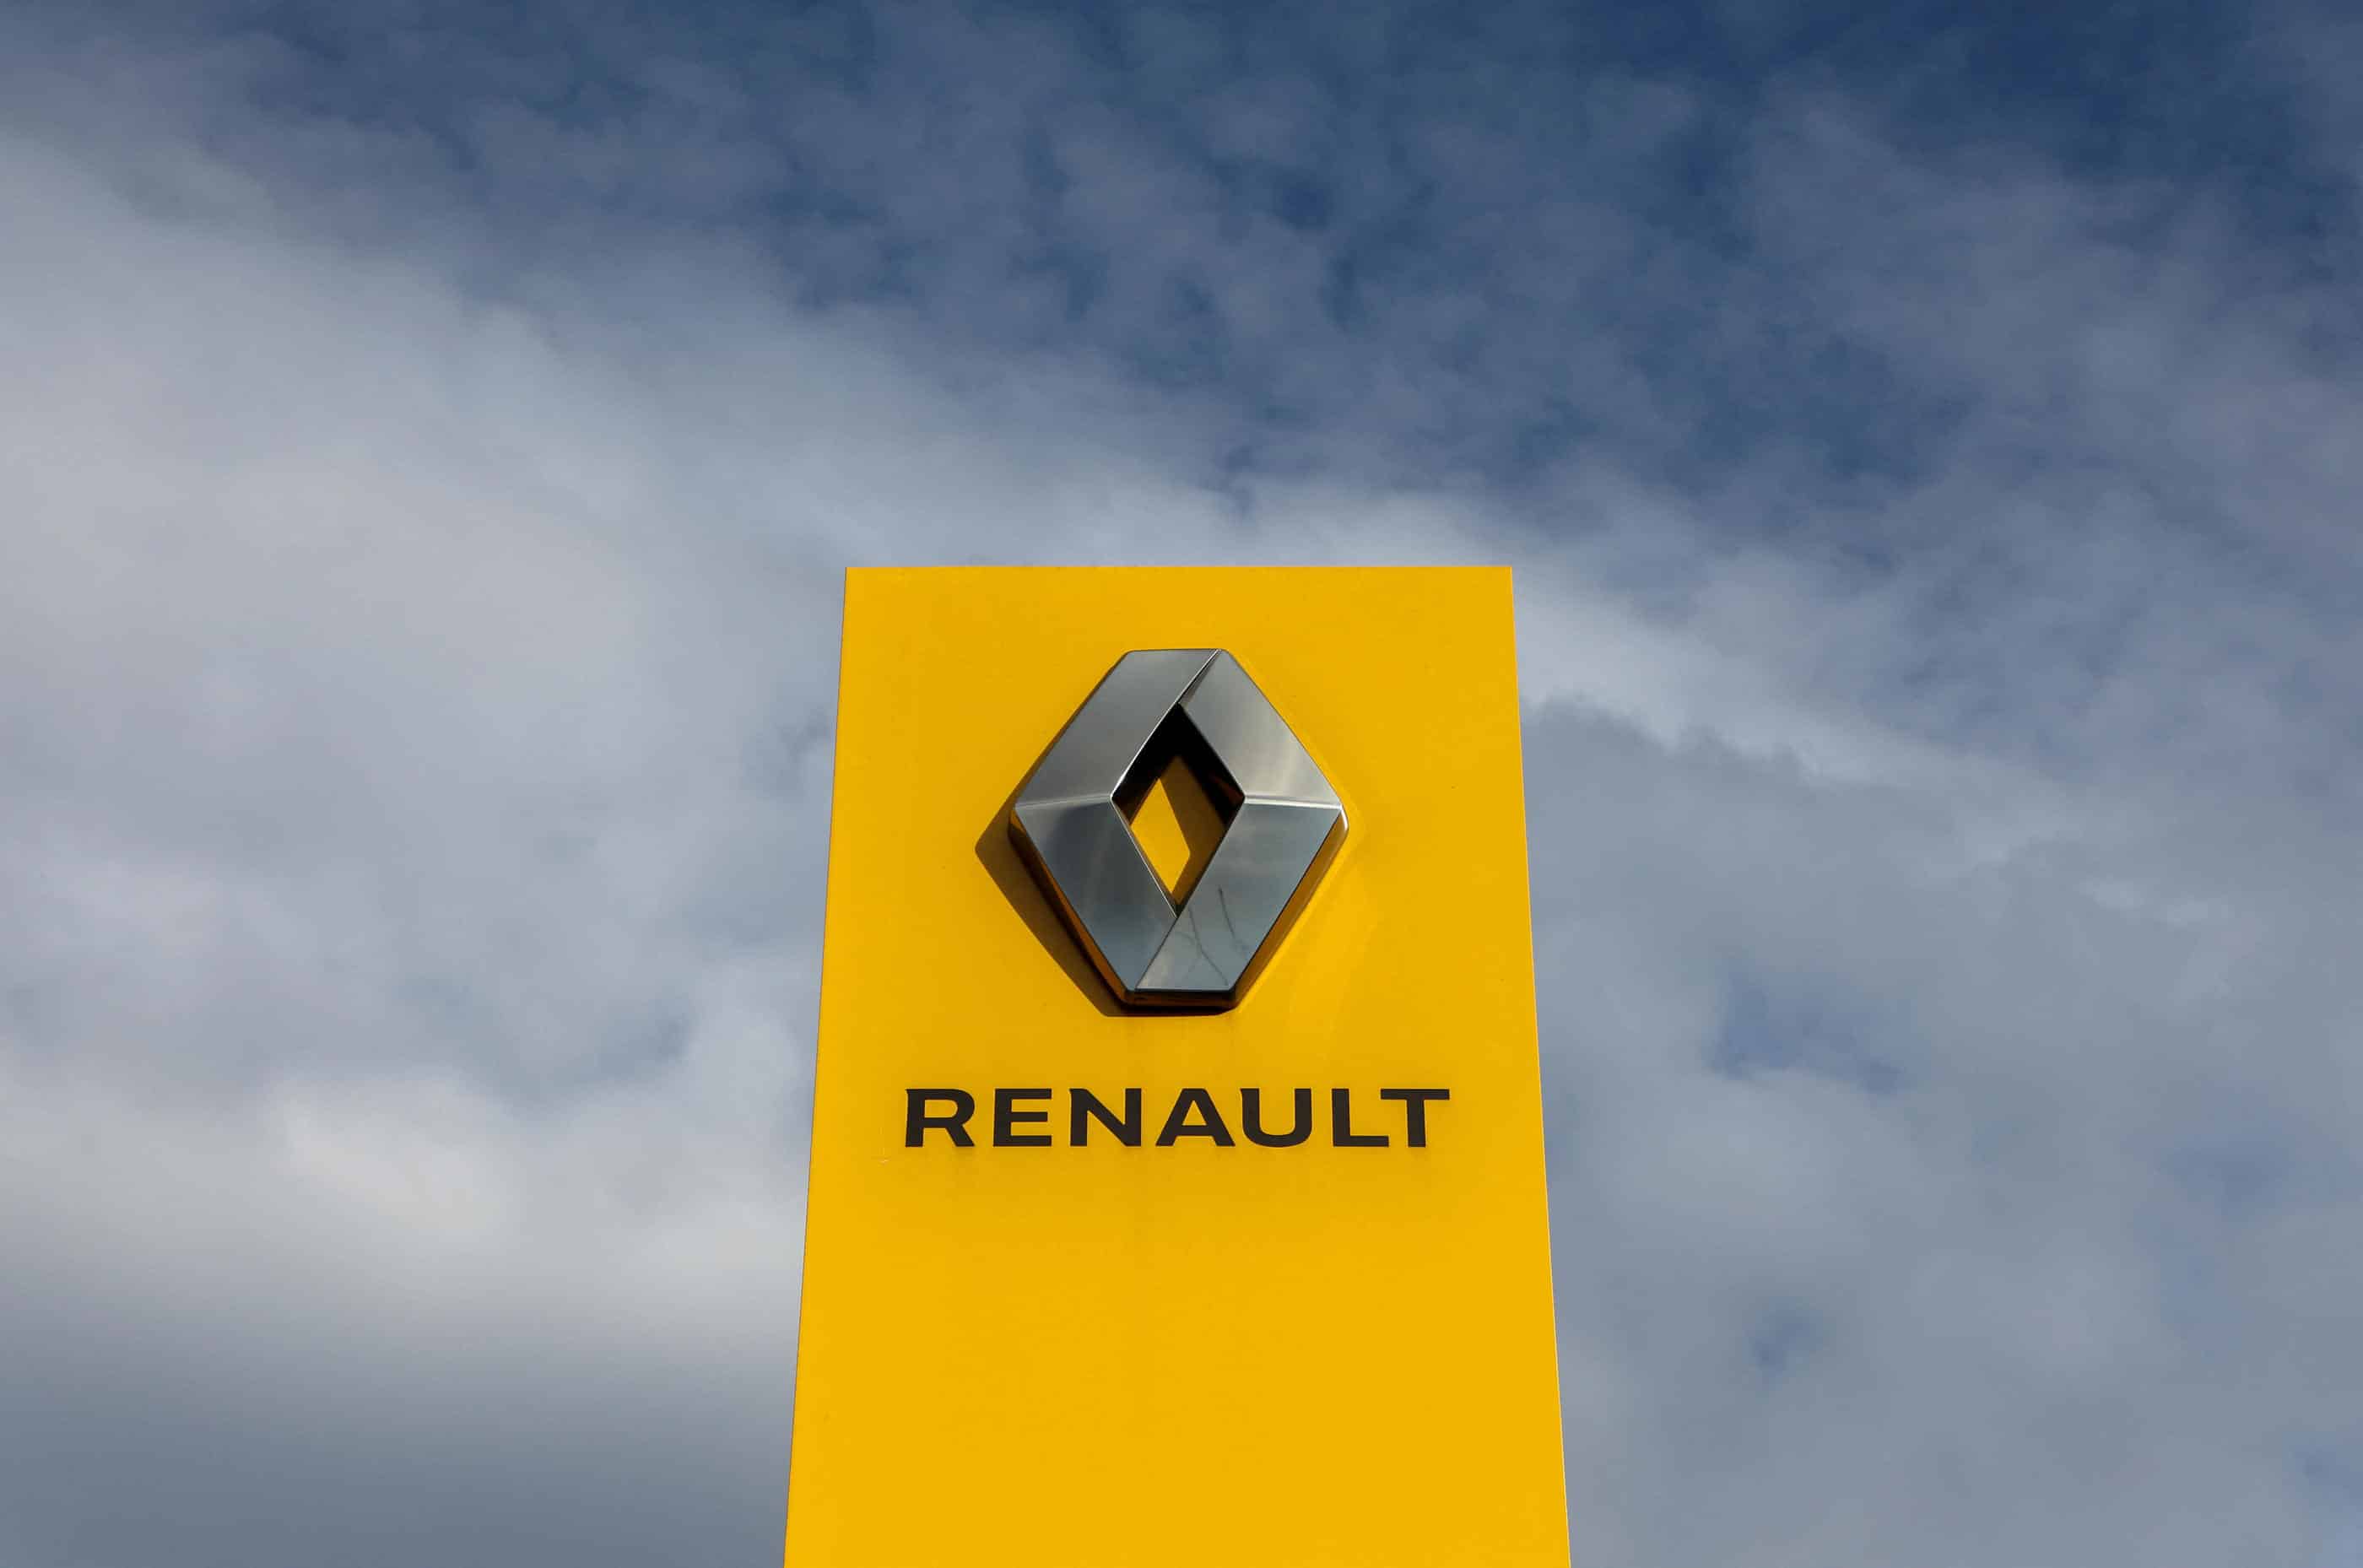 La Renault 4CV, un symbole de l'après-guerre